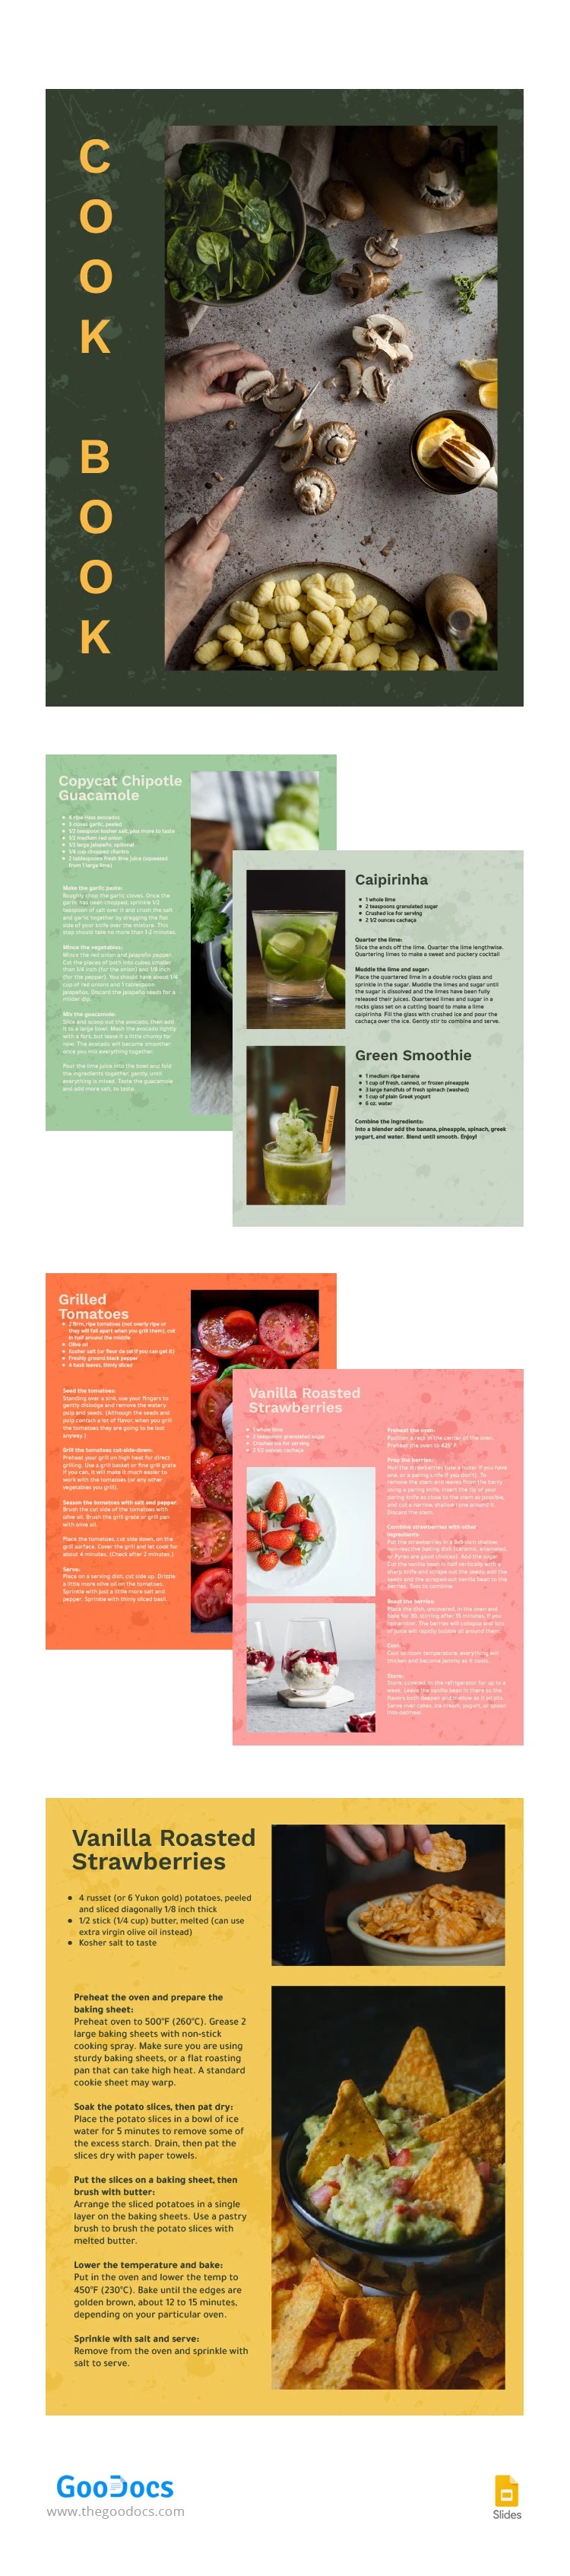 Libro de cocina colorido - free Google Docs Template - 10063265